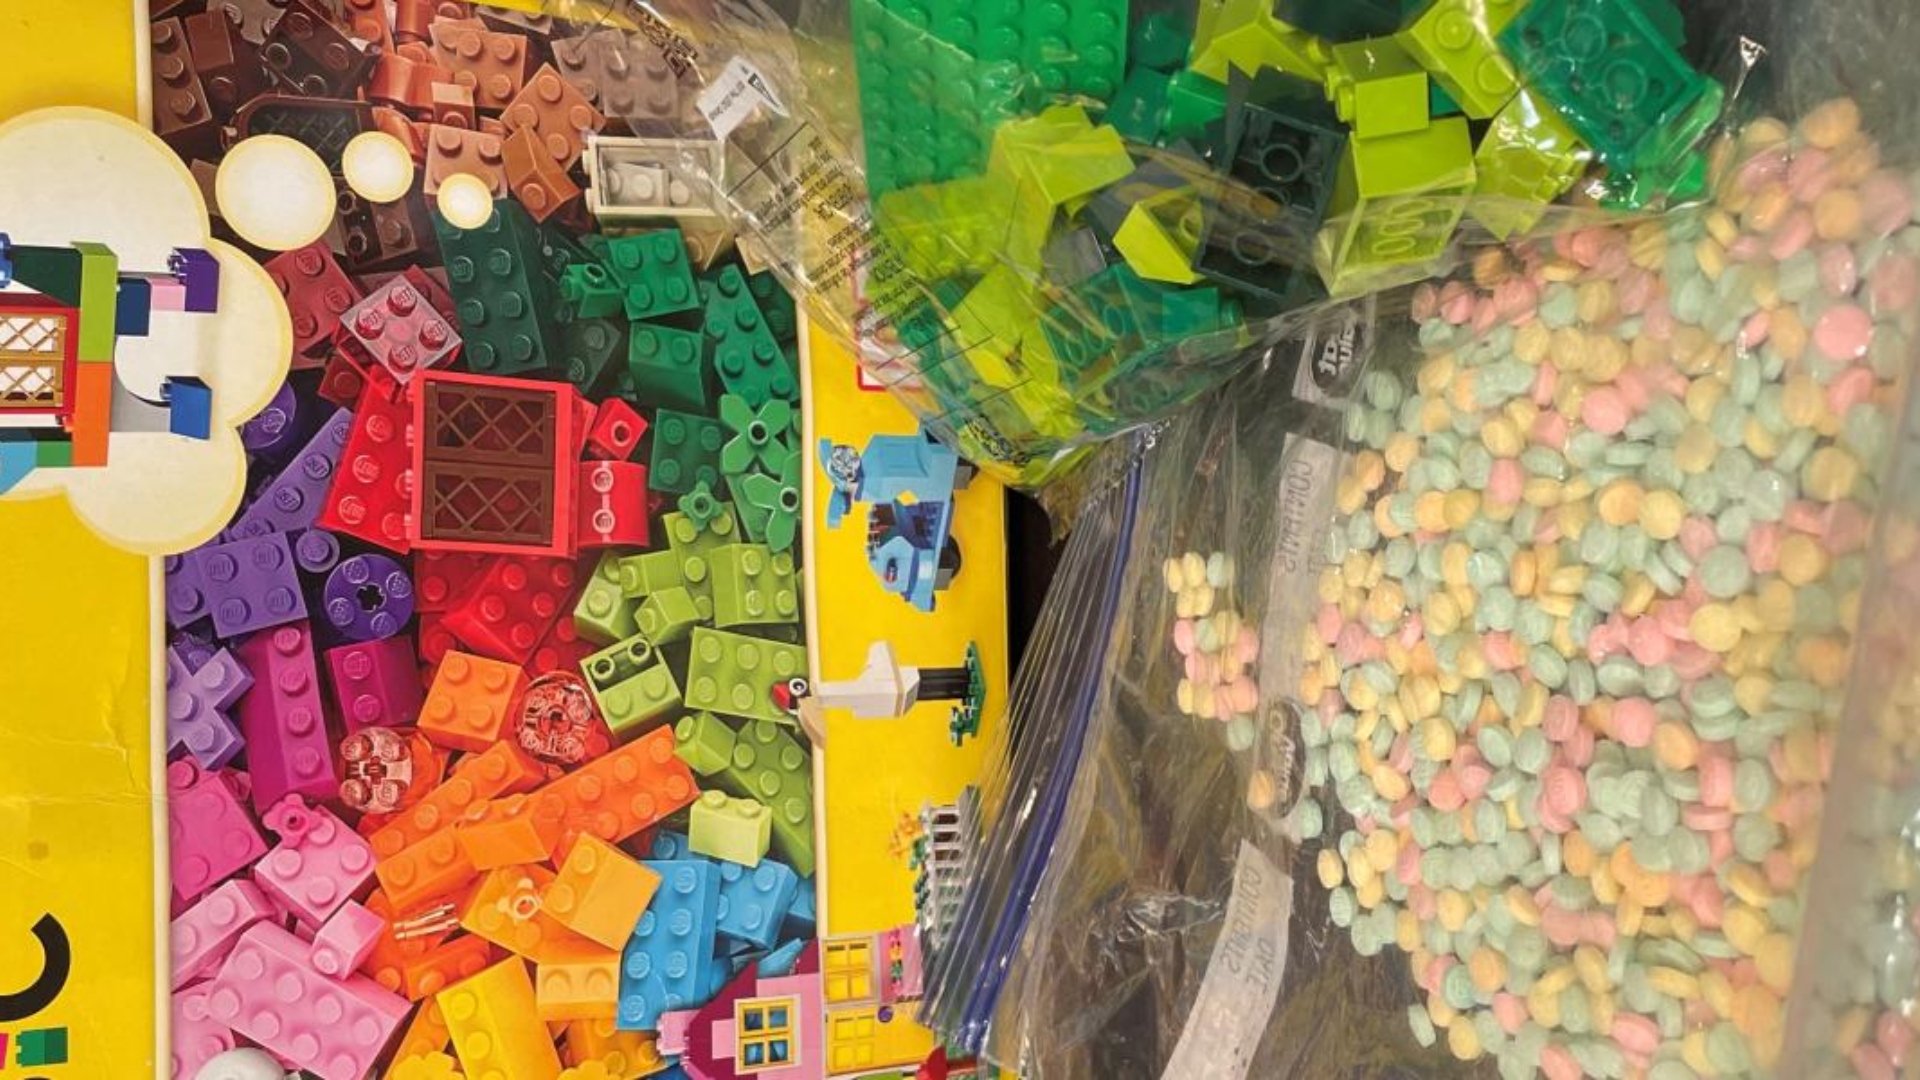 Más de 15 mil pastillas de fentanilo estaban escondidas en una caja de juguetes Lego. (Foto: DEA)